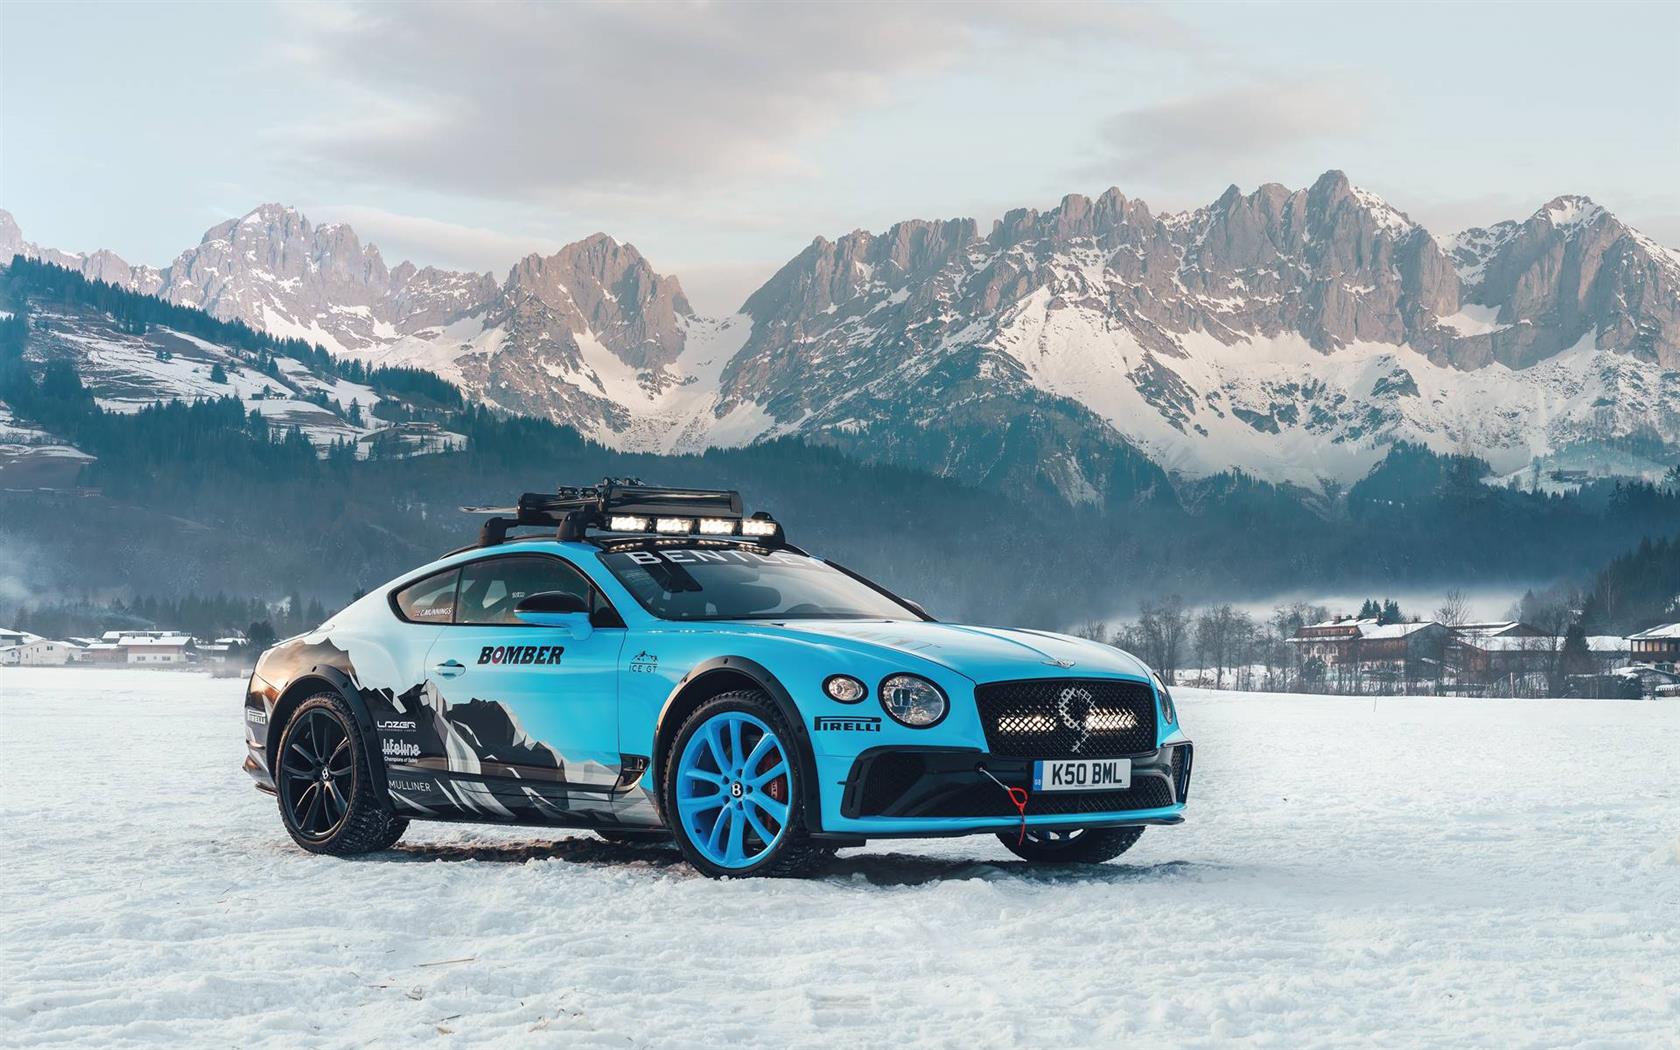 2020 Bentley Continental GT Ice Racer